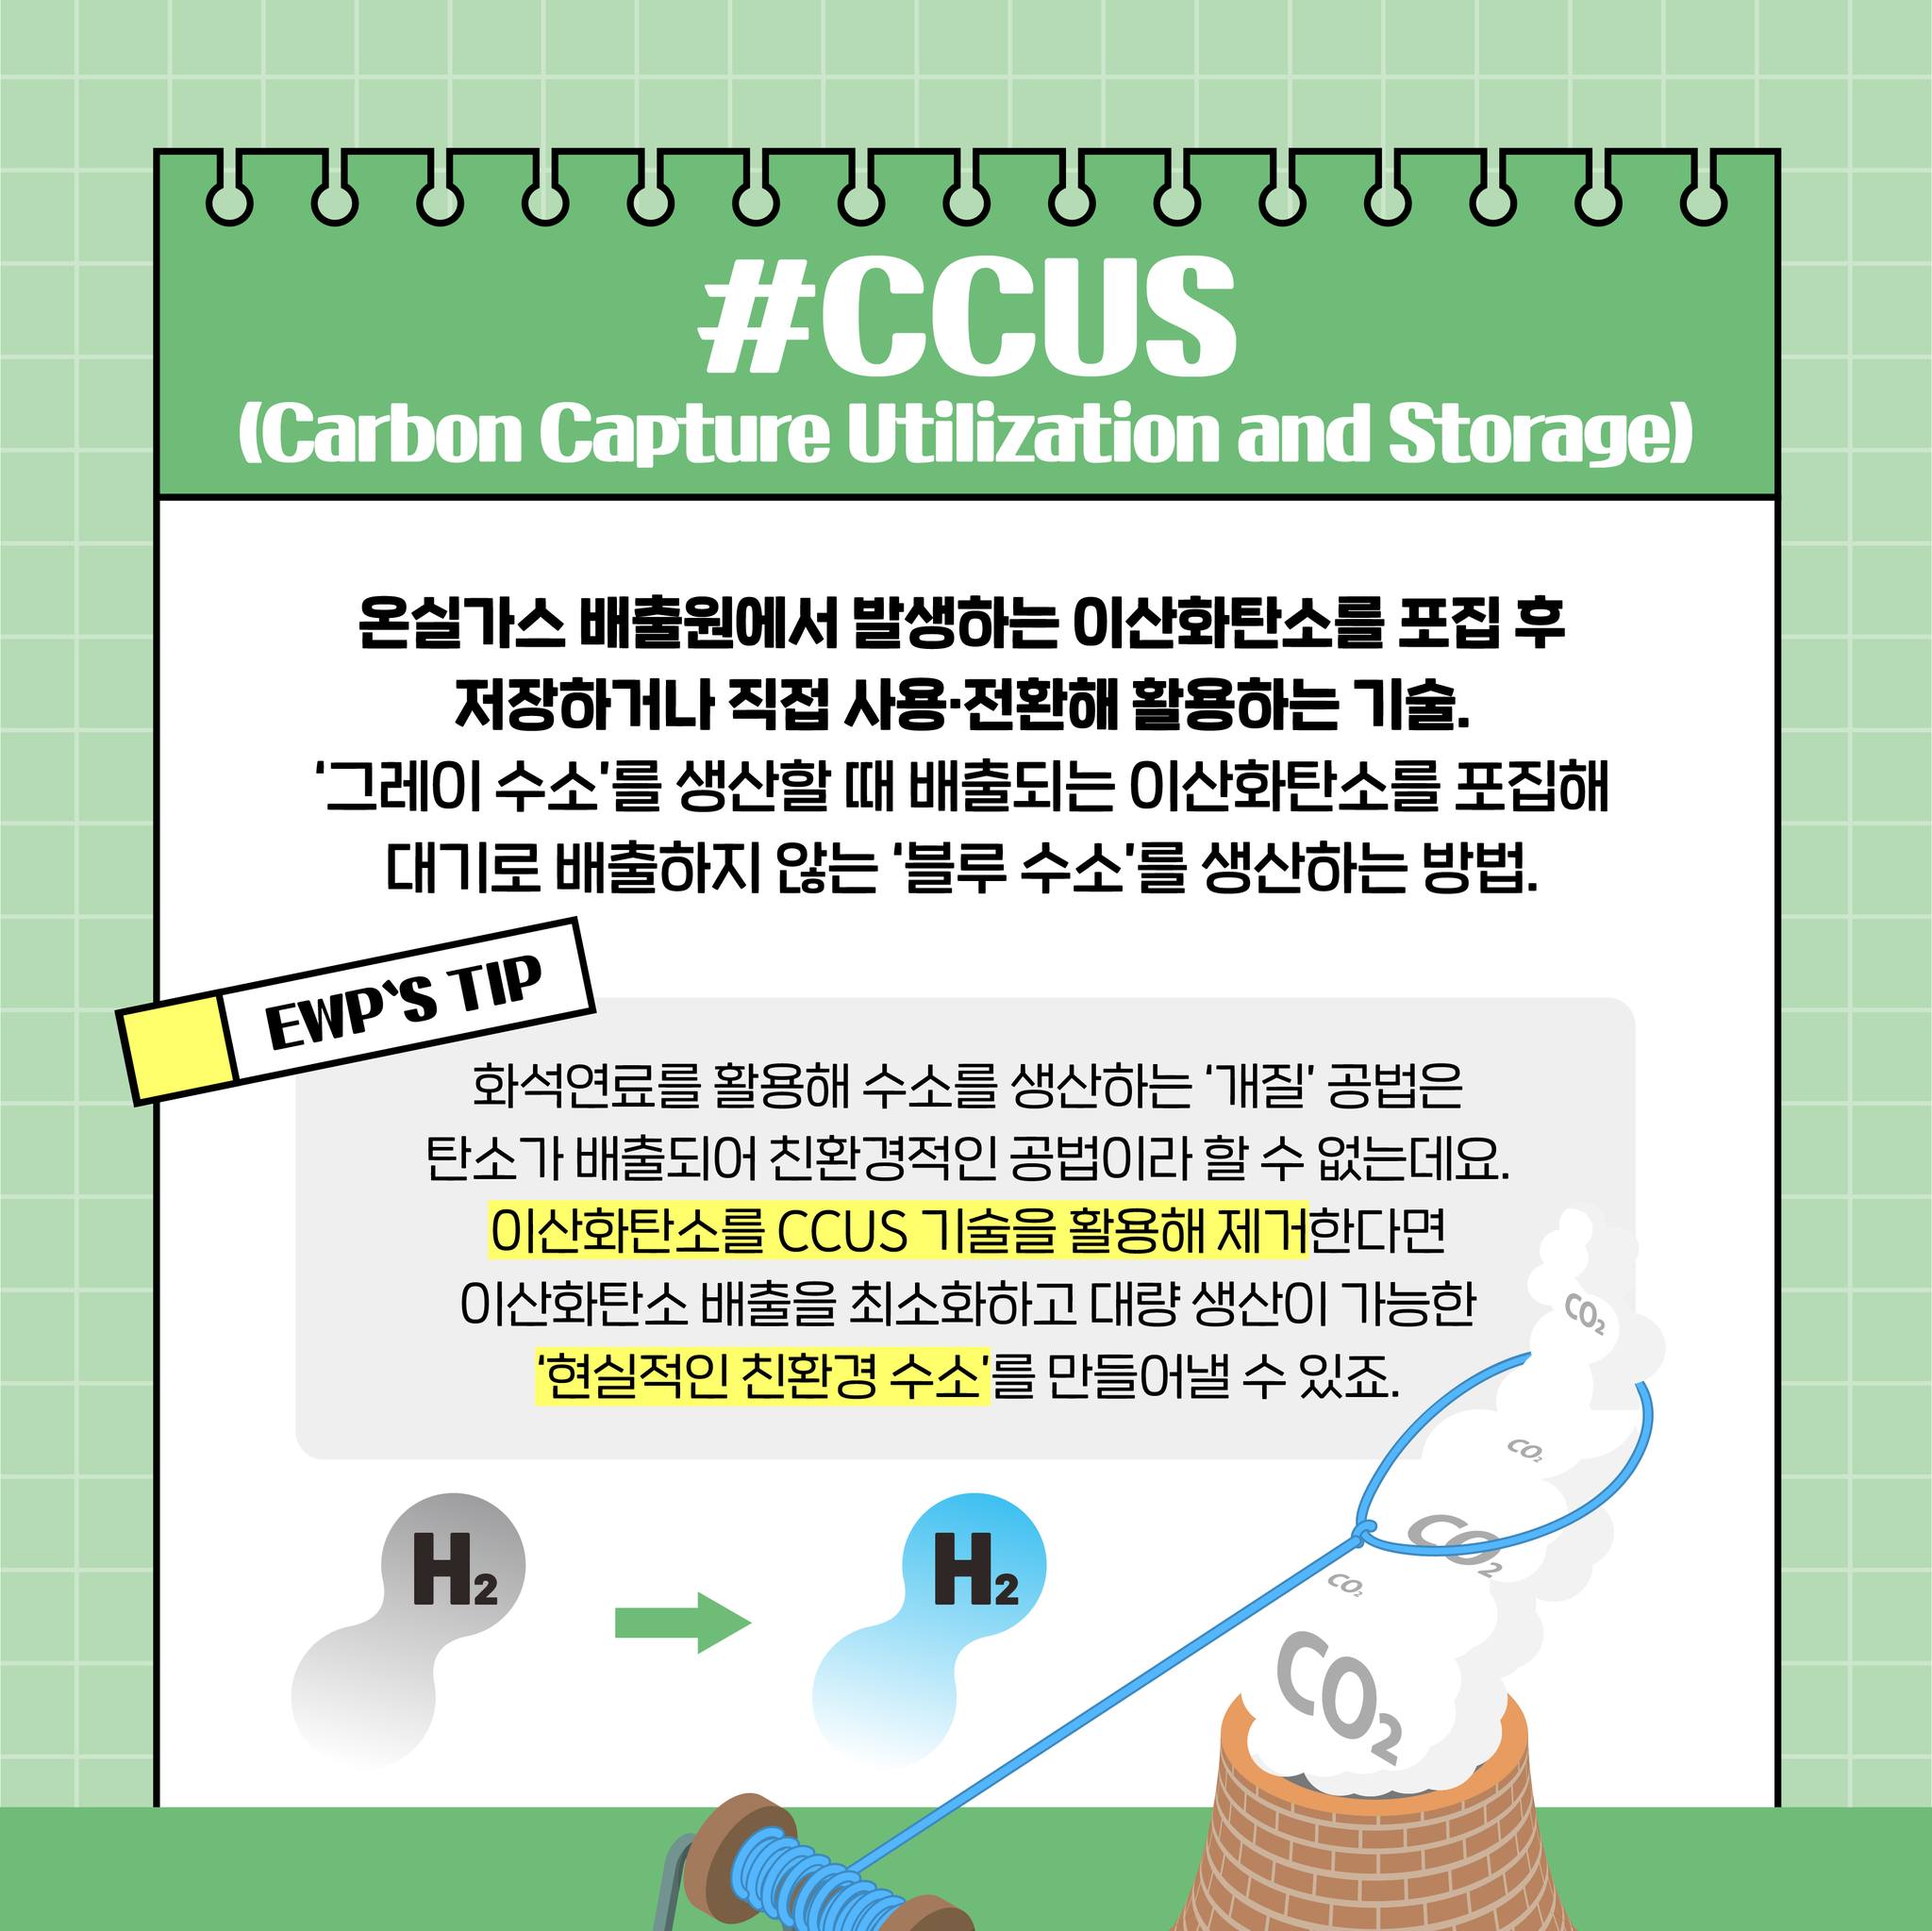 #CCUS (Carbon Capture Utilization and Storage) 온실가스 배출원에서 발생하는 이산화탄소를 포집 후 저장하거나 직접 사용전환해 활용하는 기술. 그레이 수소를 생산할 때 배출되는 이산화탄소를 포집해 대기로 배출하지 않는 블루 수소를 생산하는 방법. EWPS TIP 화석연료를 활용해 수소를 생산하는 개질 공법은 탄소가 배출되어 친환경적인 공법이라 할 수 없는데요. 이산화탄소를 CCUS 기술을 활용해 제거한다면 이산화탄소 배출을 최소화하고 대량생산이 가능한 현실적인 친환경 수소를 만들어낼 수 있죠. H2 CO CO2 H2 CO2